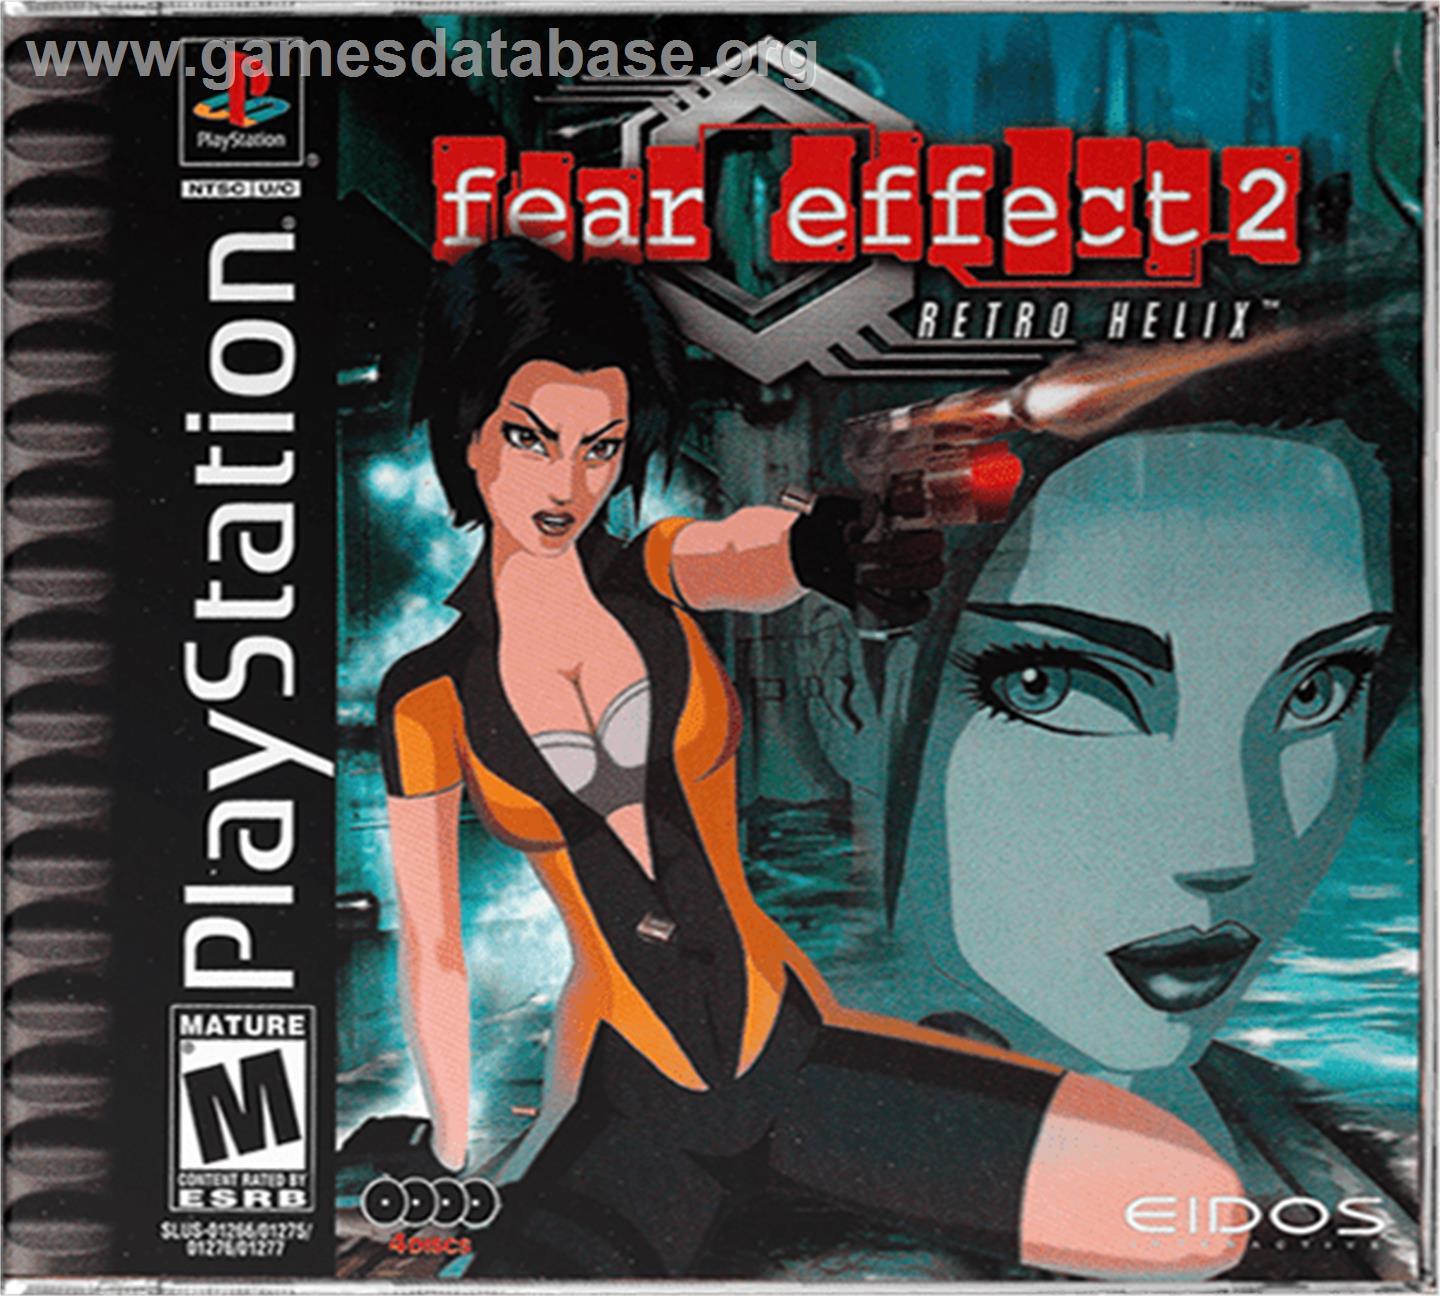 Fear Effect 2: Retro Helix - Sony Playstation - Artwork - Box